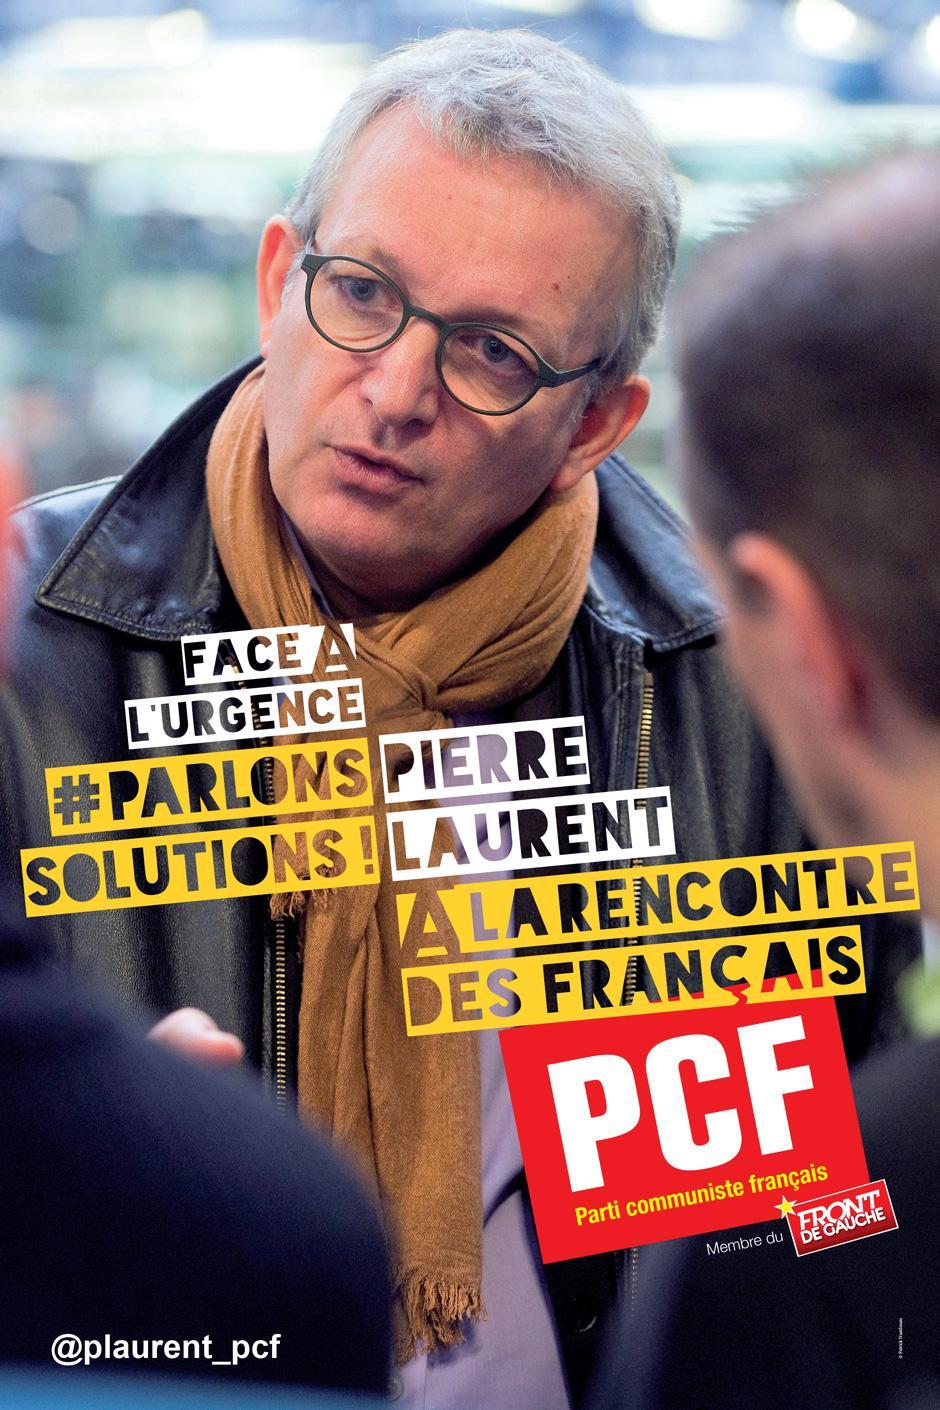 Rencontre avec Pierre Laurent : Communisme(s) au XXIe siècle (Poitiers)